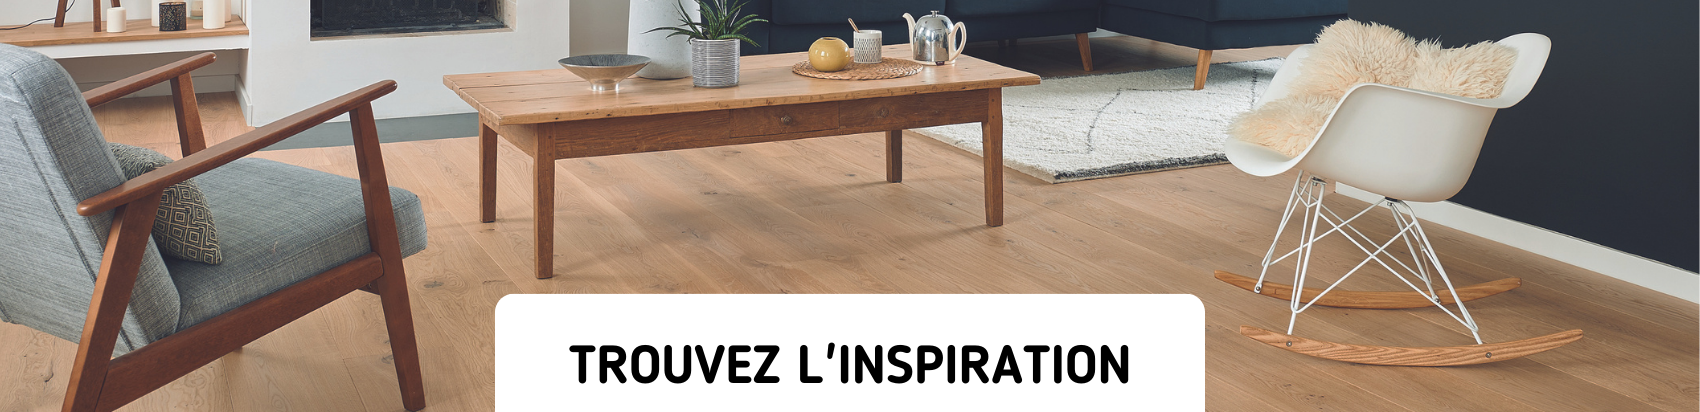 Photo d'ambiance d'un salon. Parquet clair, une table en bois, une chaise blanche à gauche et une autre grise à droite. L'image a pour intitulé "Trouvez l'inspiration"